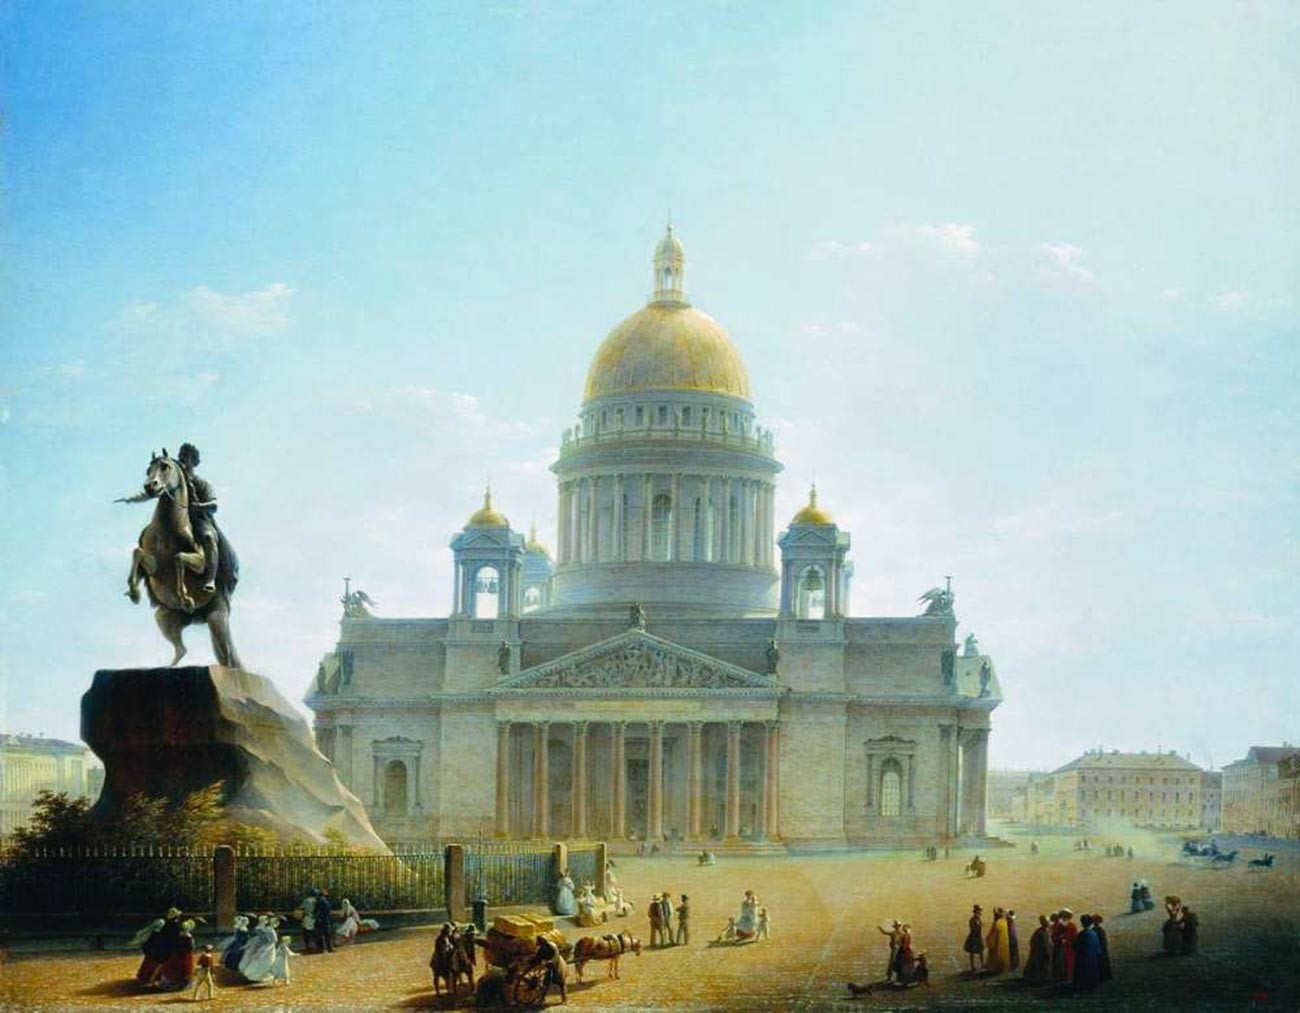 La cathédrale Saint-Isaac et le Cavalier de bronze, monument à Pierre le Grand. Fin des années 1820 - début des années 1830
